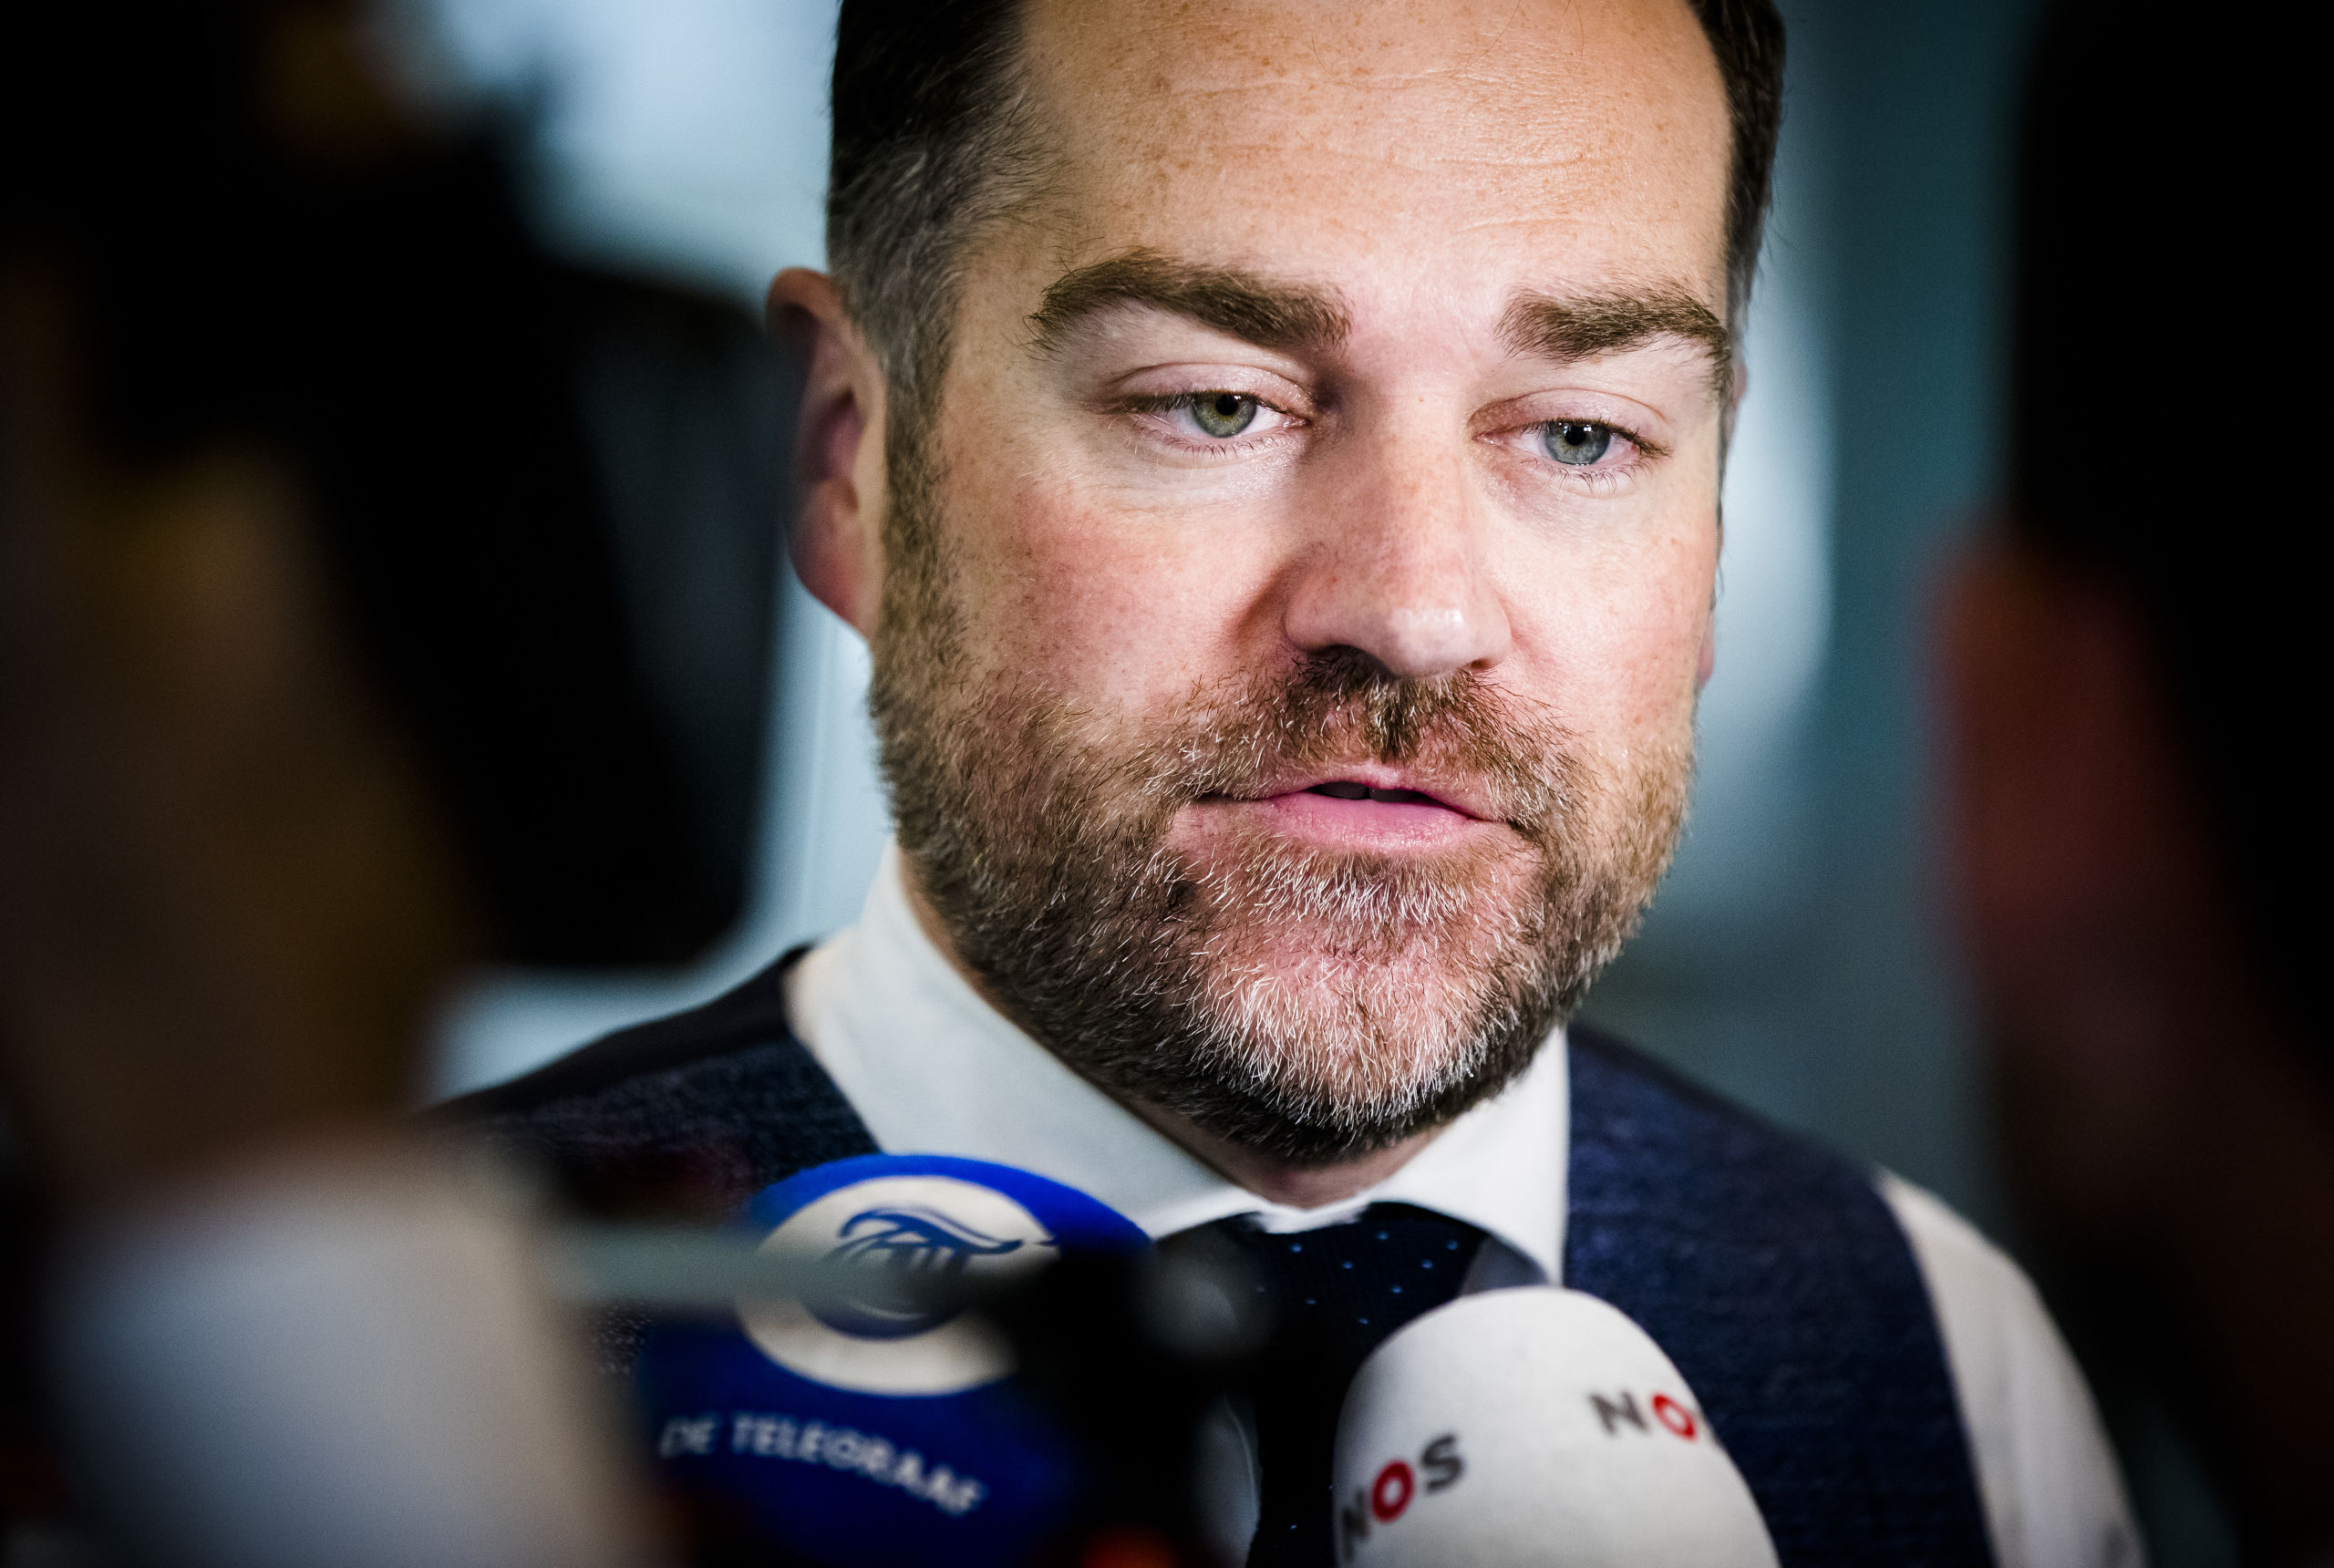 Klaas Dijkhoff (VVD) 